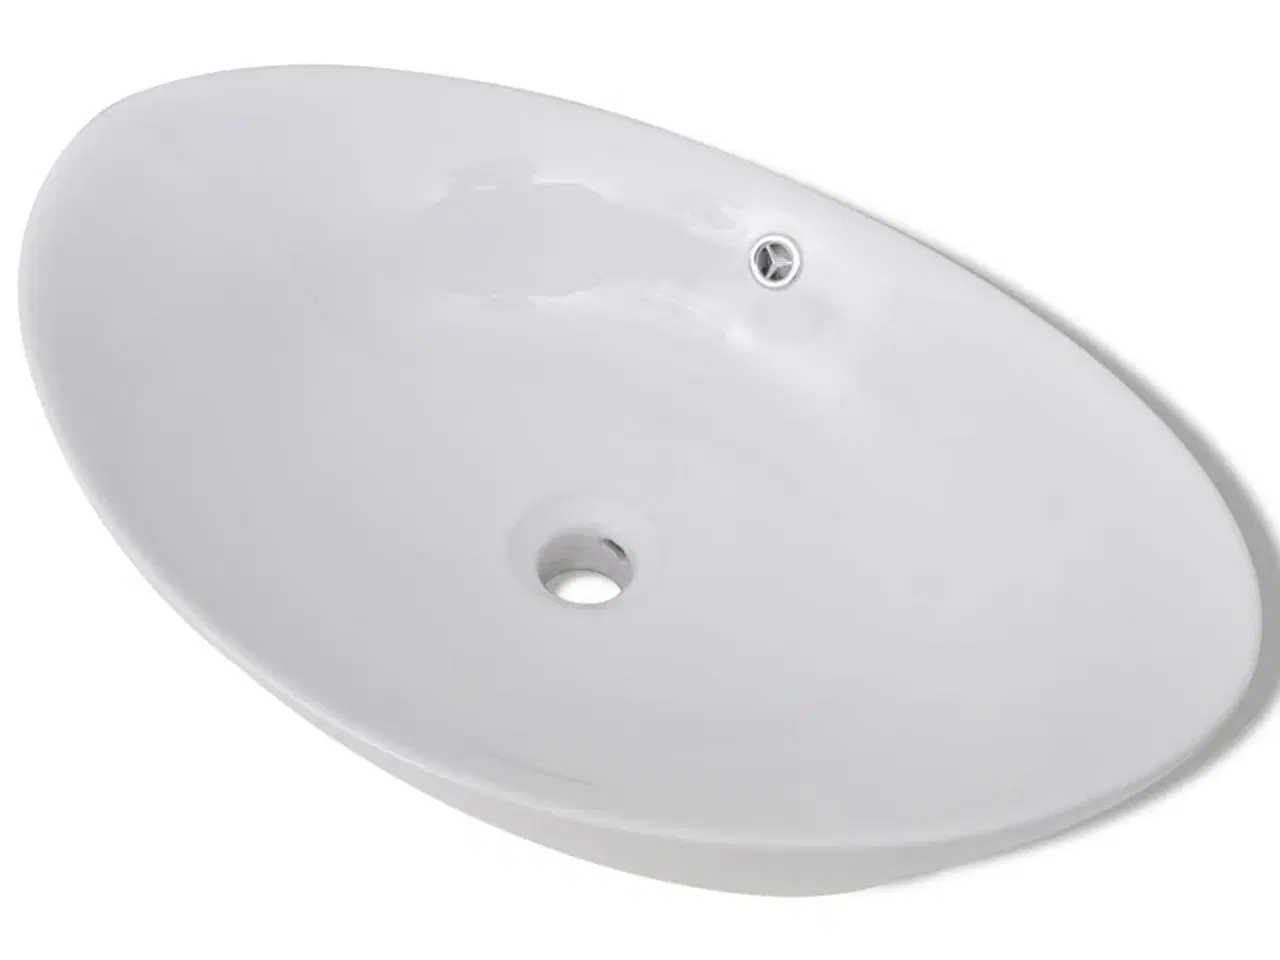 Billede 2 - Håndvask keramisk oval med overløb 59 x 38,5 cm